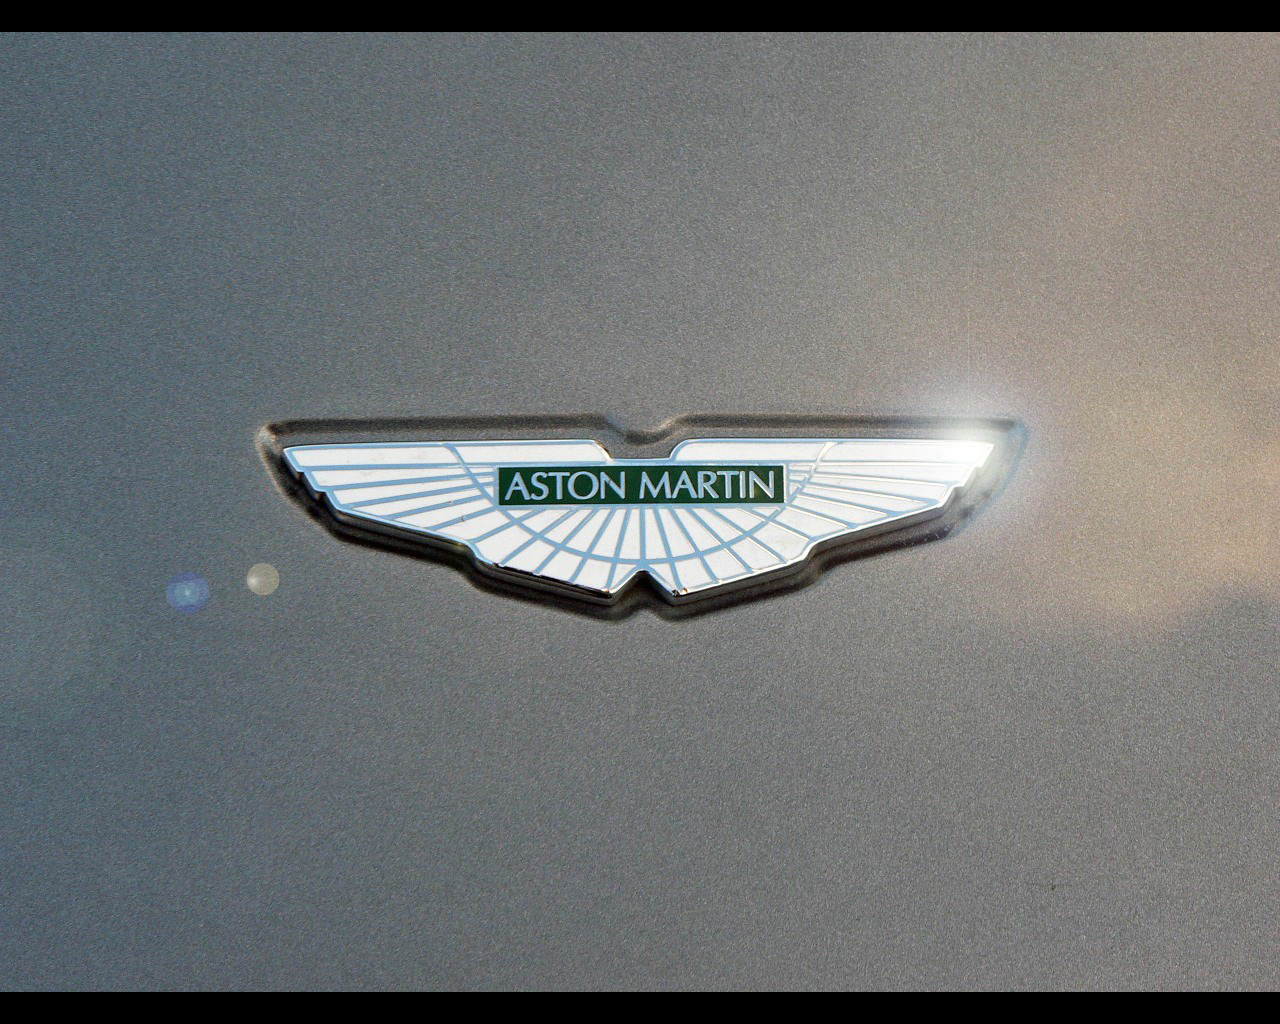 papier peint logo aston martin,véhicule,emblème,voiture,badge,grille